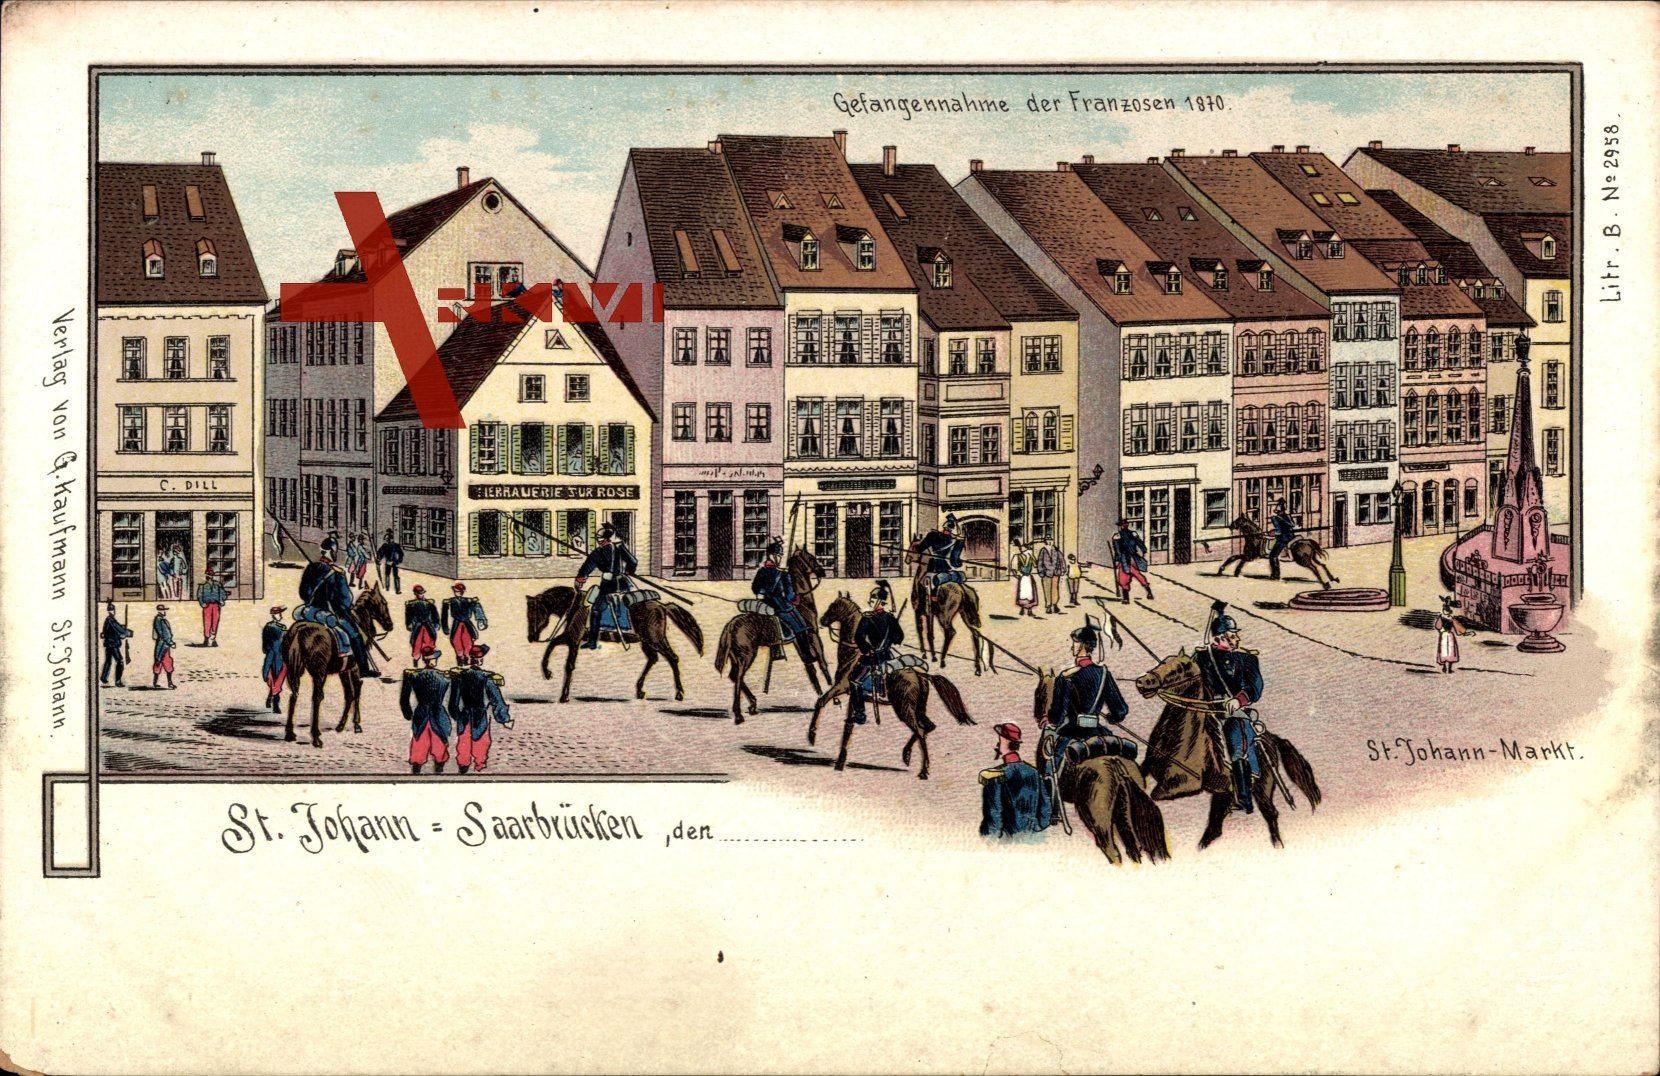 St. Johann Saarbrücken, Gefangennahme der Franzosen 1870, Markt